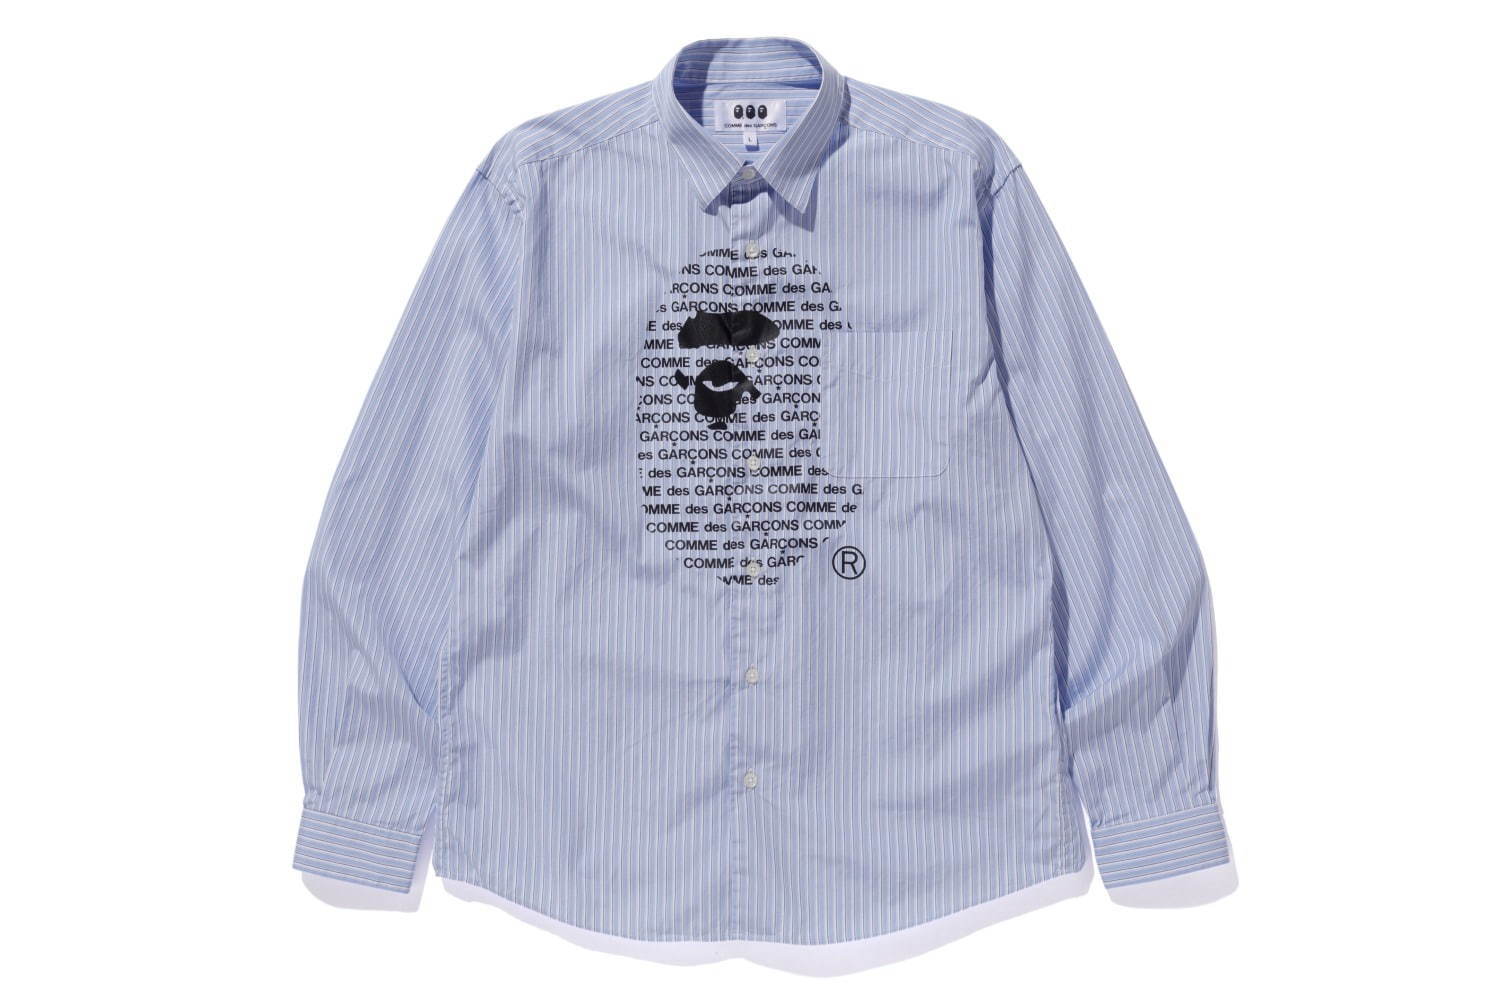 ア ベイシング エイプ コム デ ギャルソン初コラボ 限定シャツ パーカーを大阪で販売 ファッションプレス